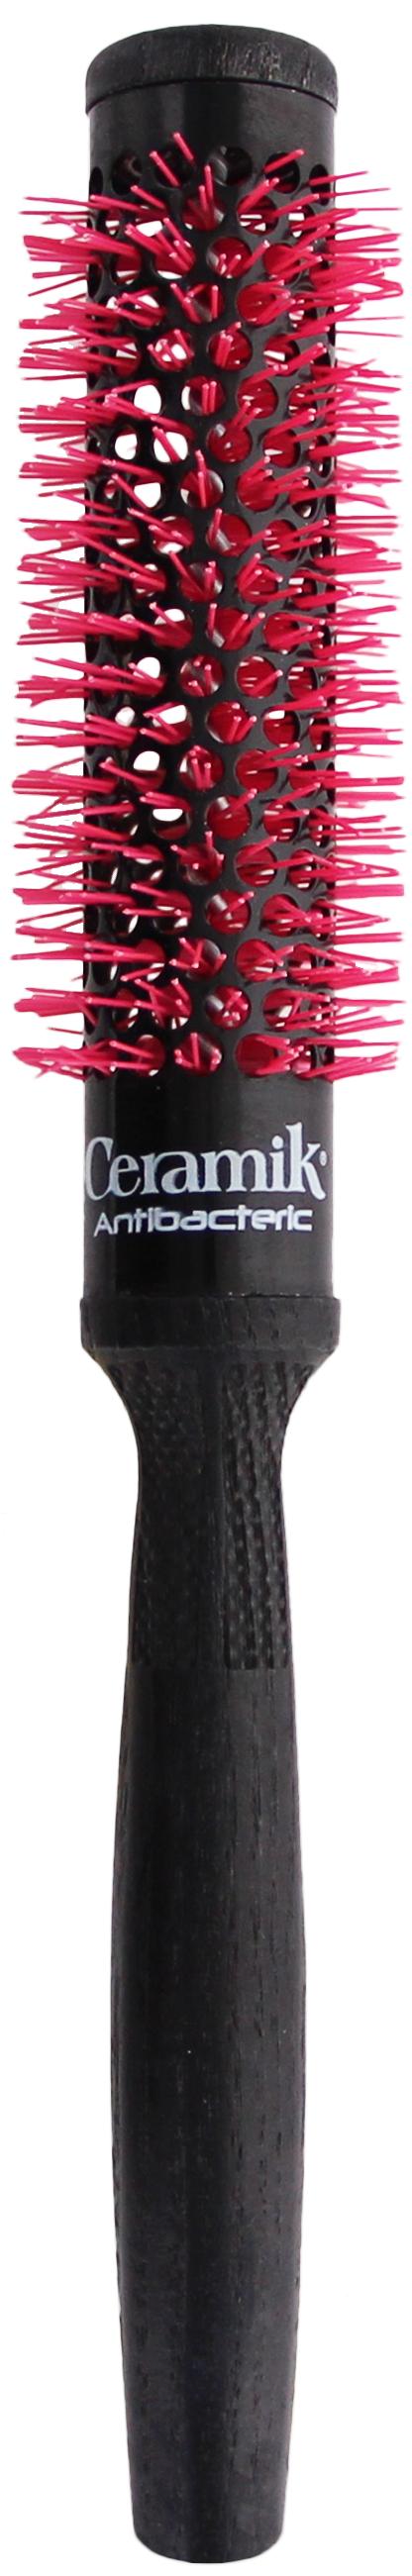 Tek Ceramik Antibateric Oxy Round Brush 24mm